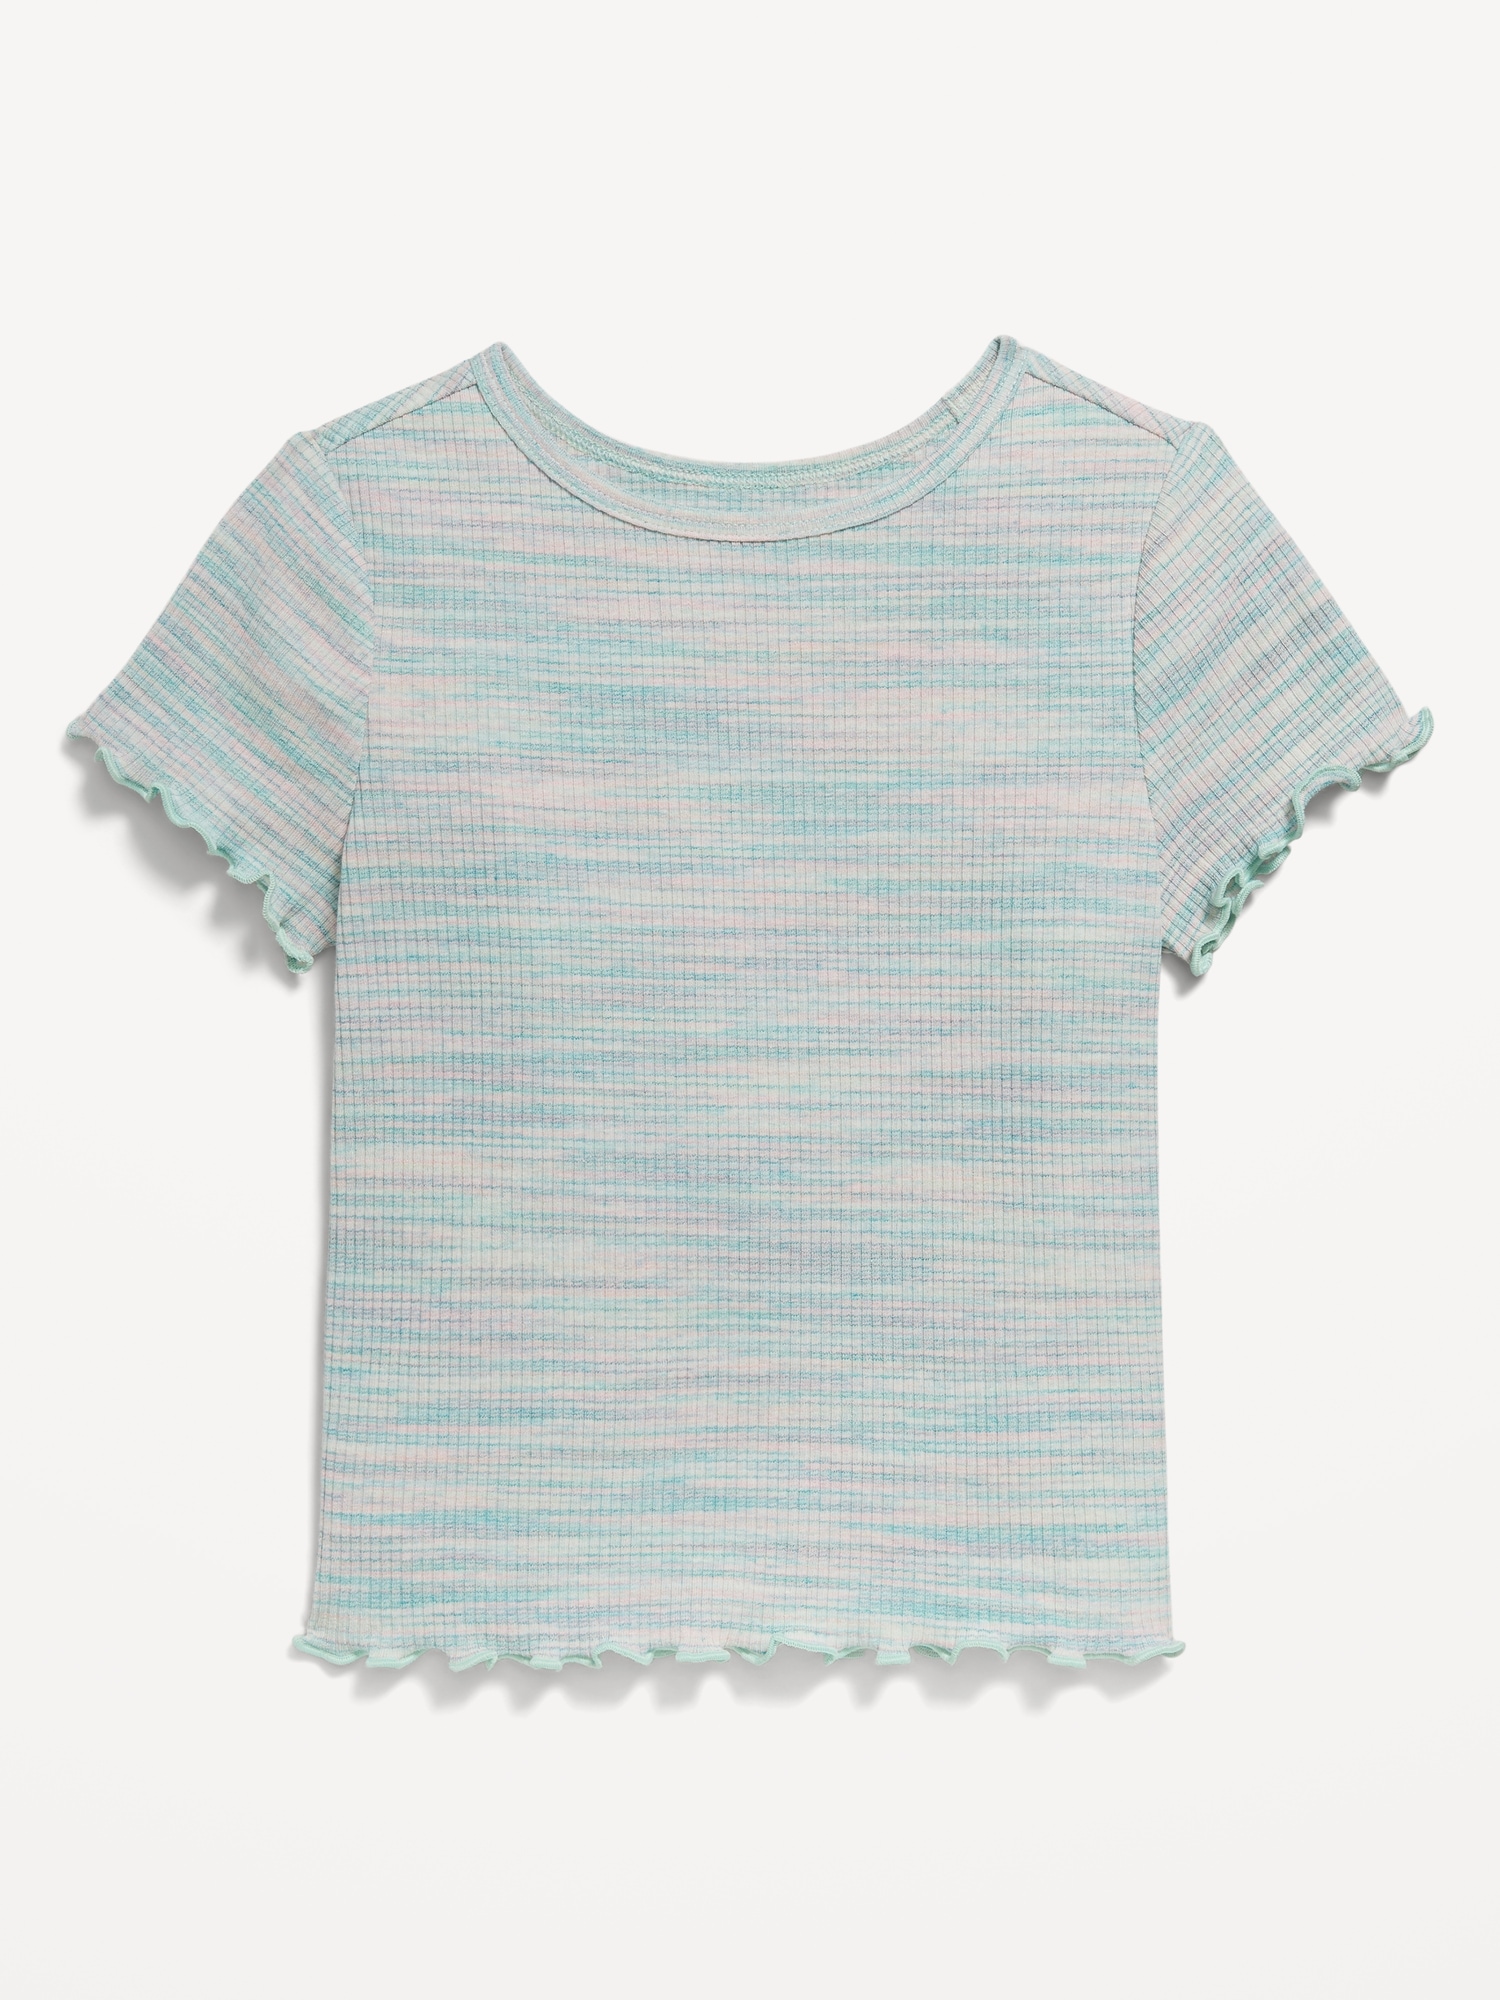 Short-Sleeve Lettuce-Edge T-Shirt for Toddler Girls